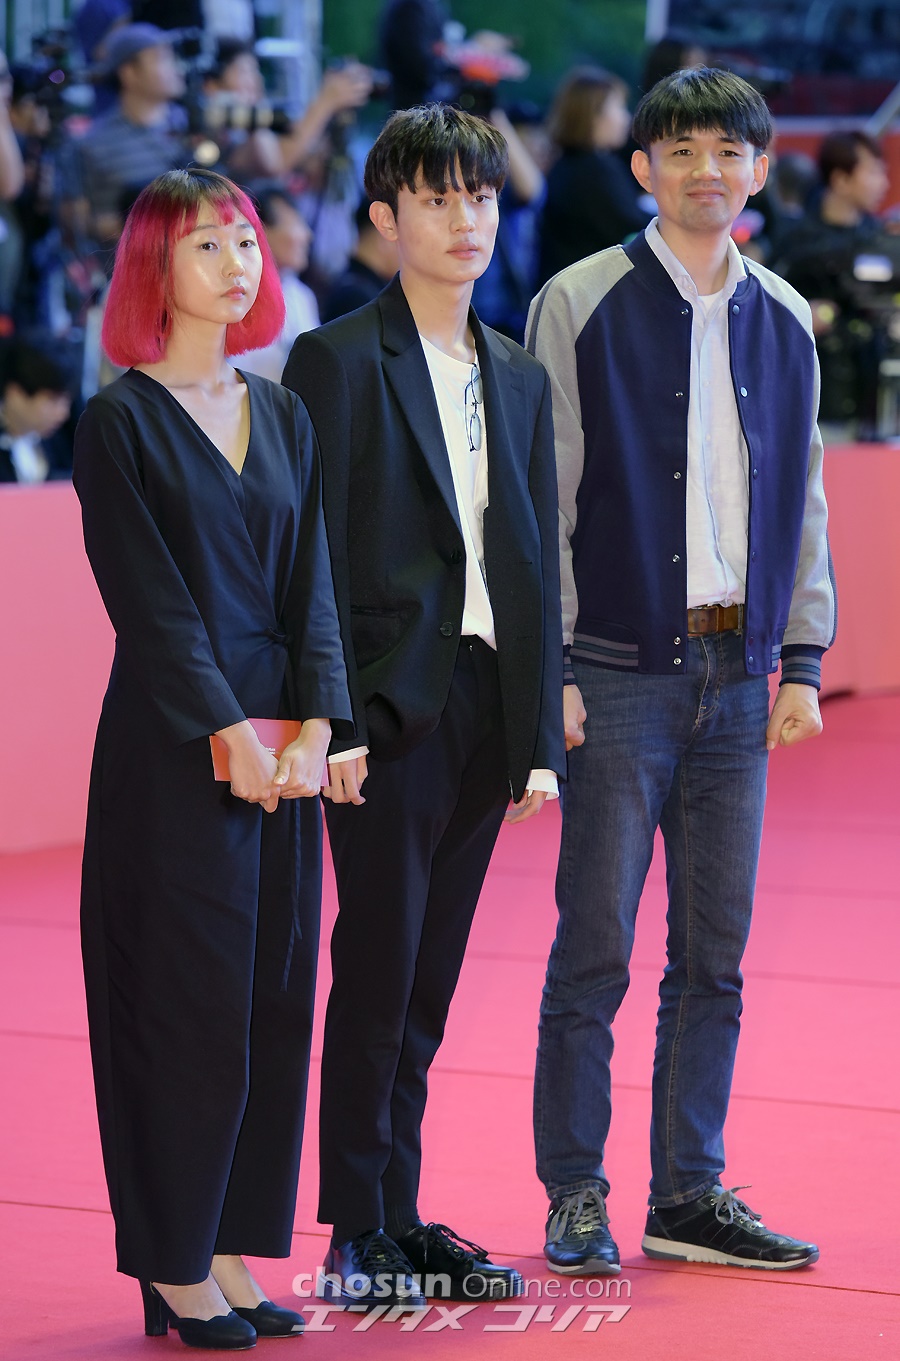 【フォト】釜山映画祭開幕式に出席したスターたち